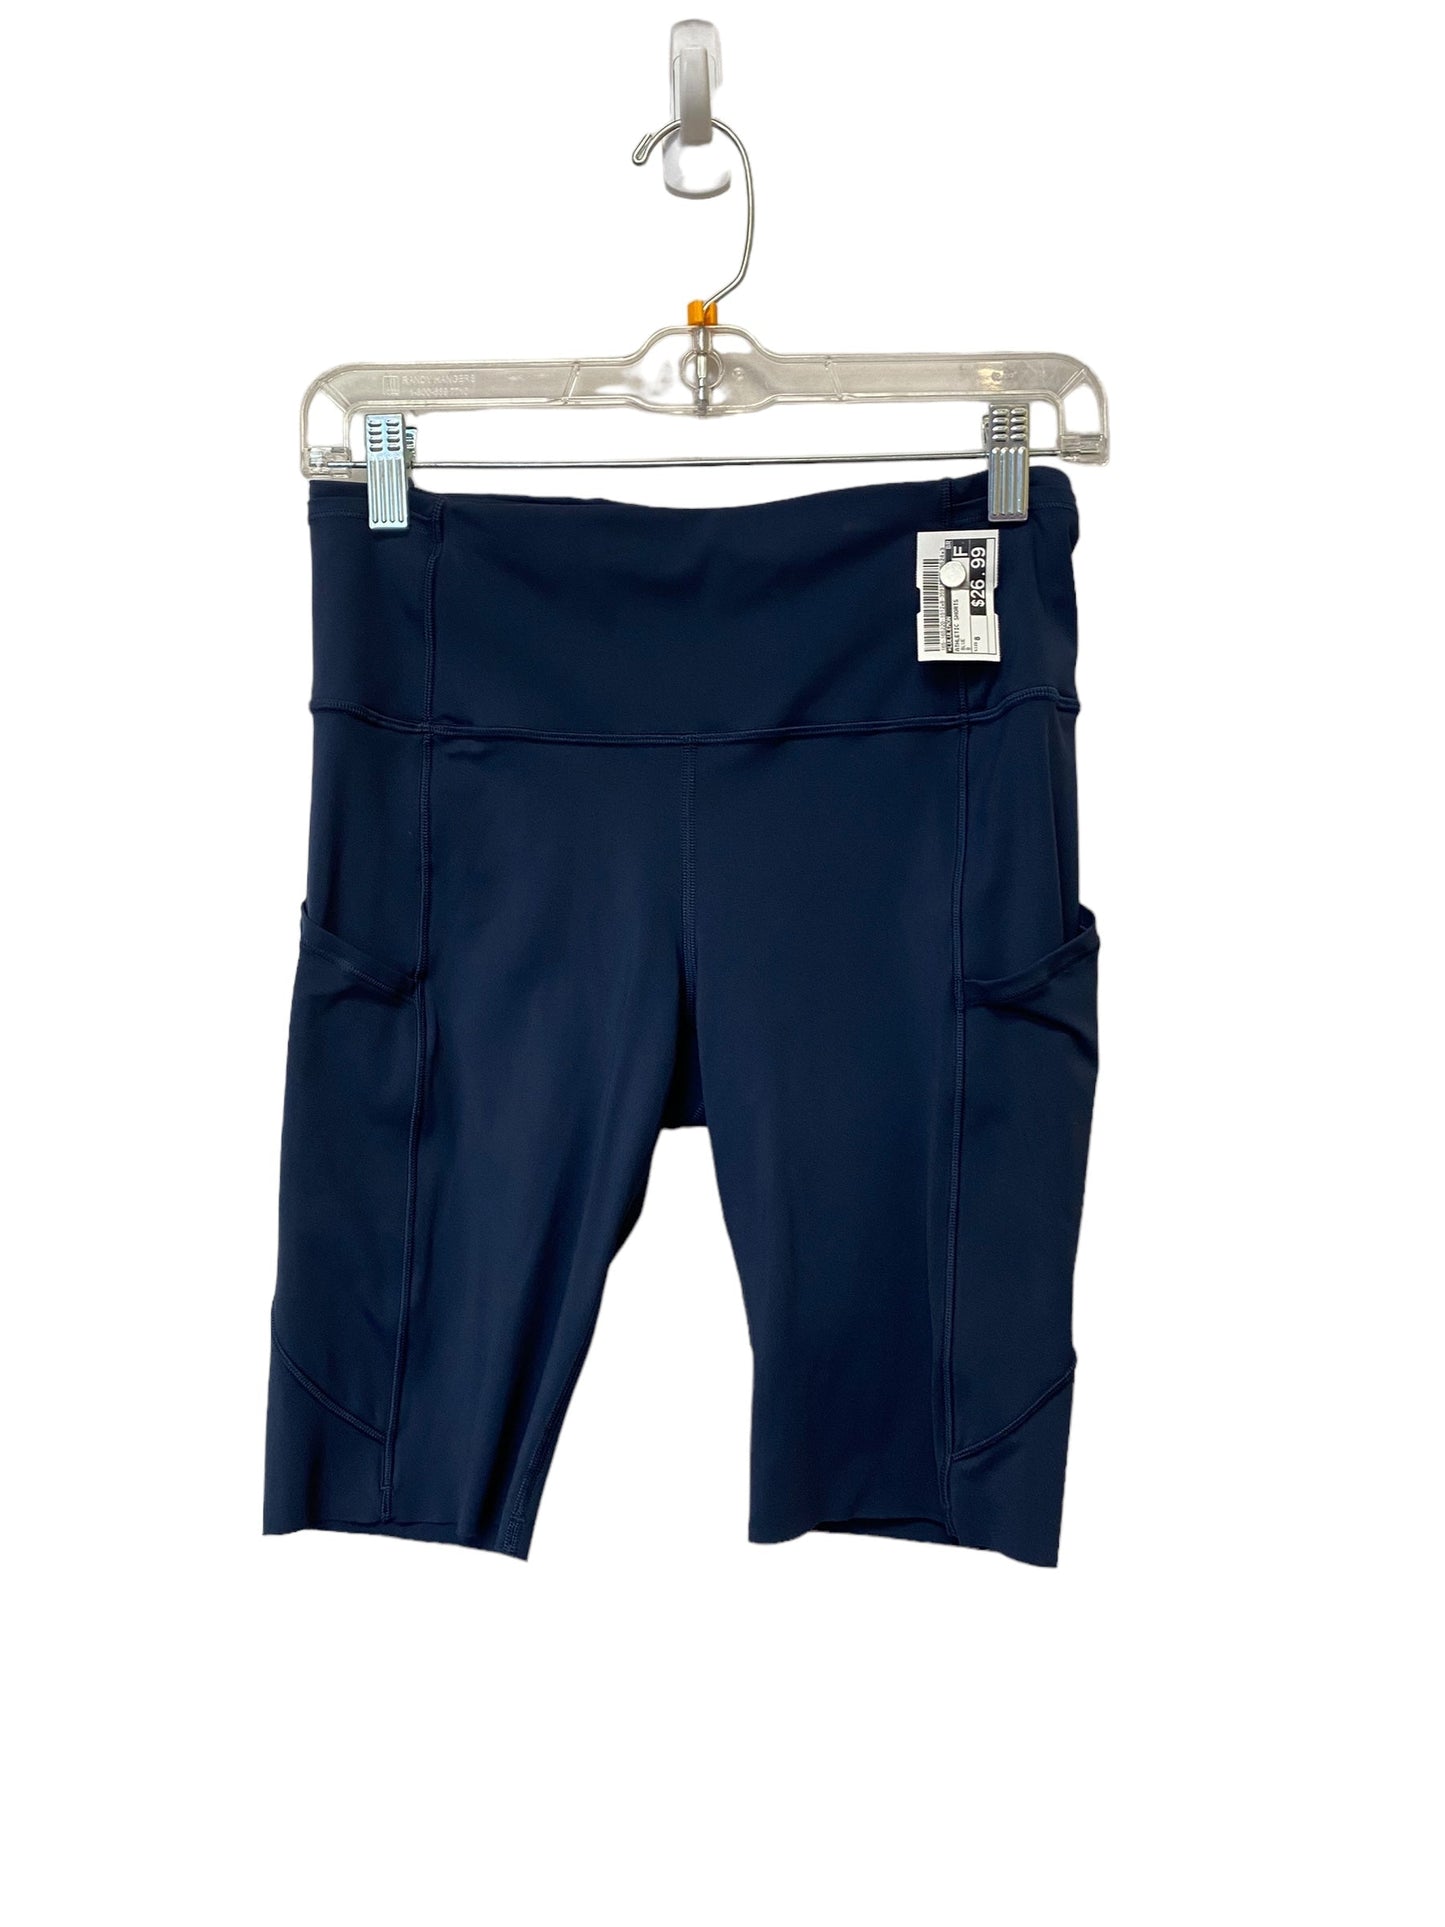 Blue Athletic Shorts Lululemon, Size 8